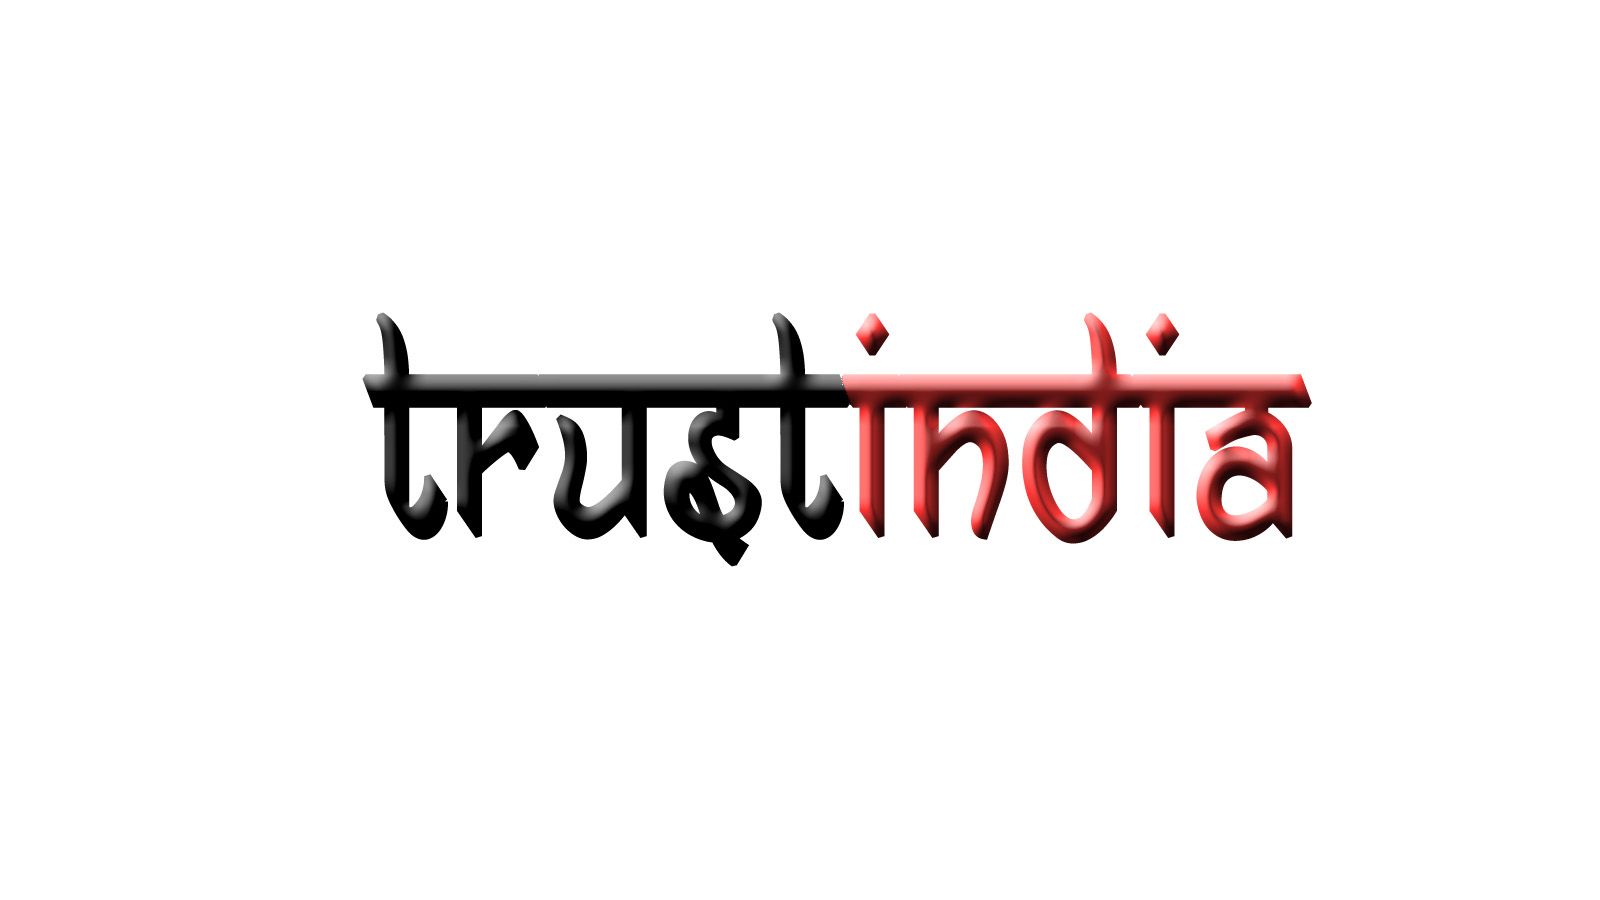 Логотип сайта об Индии, инд. товарах, здоровье - дизайнер dwetu